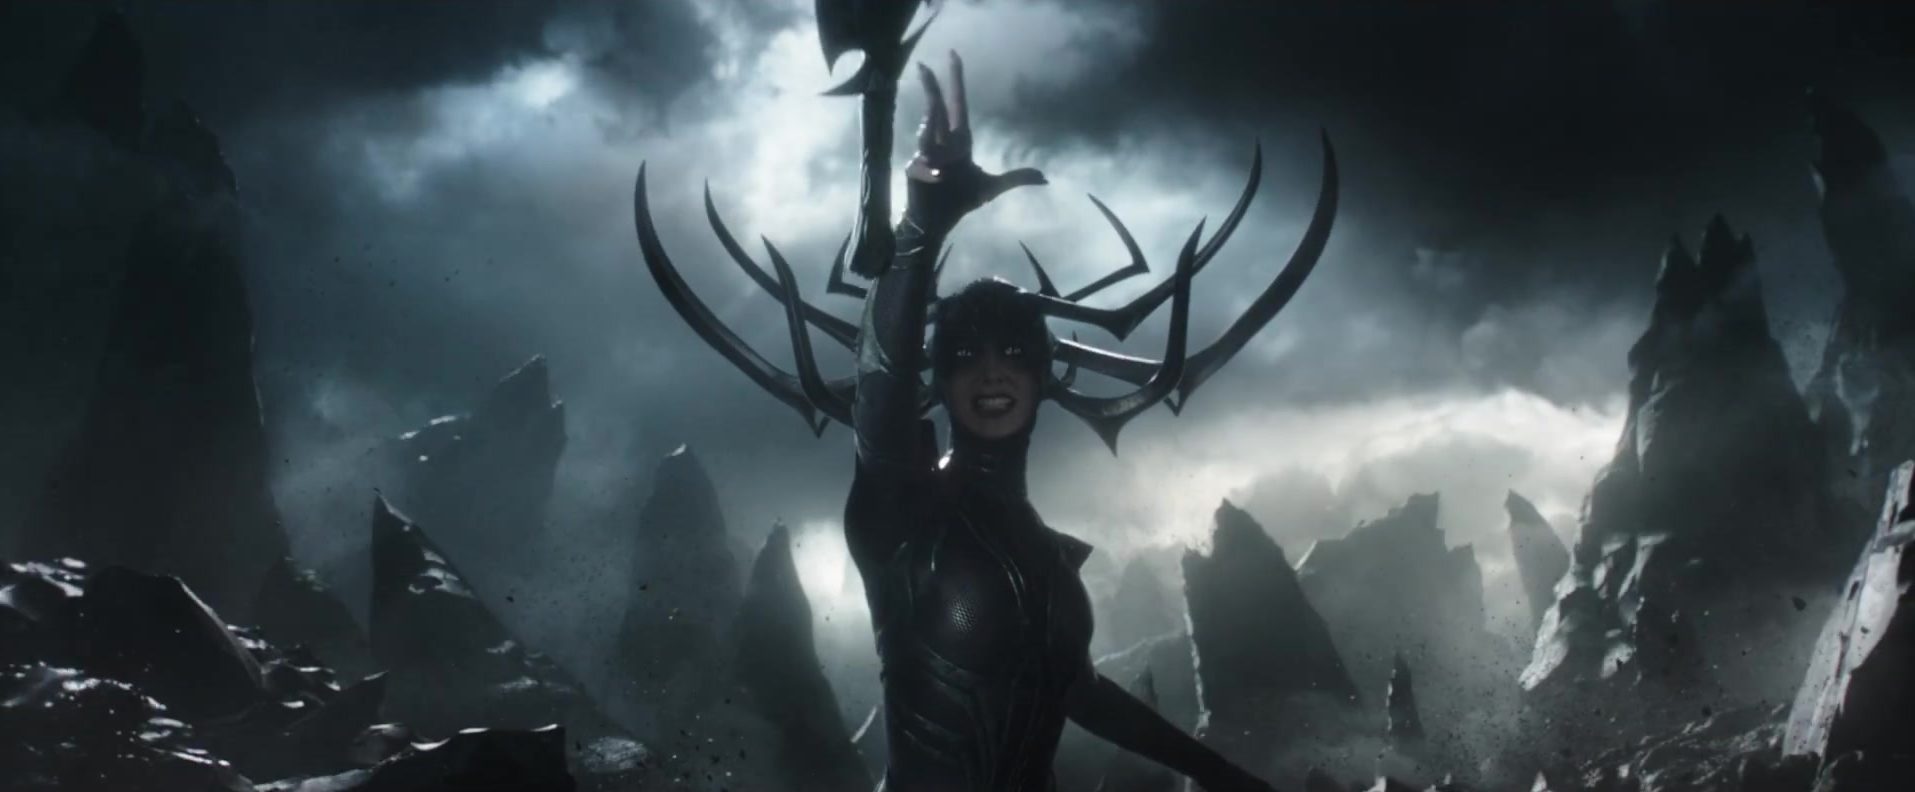 New TV promo for Marvel’s Thor: Ragnarok